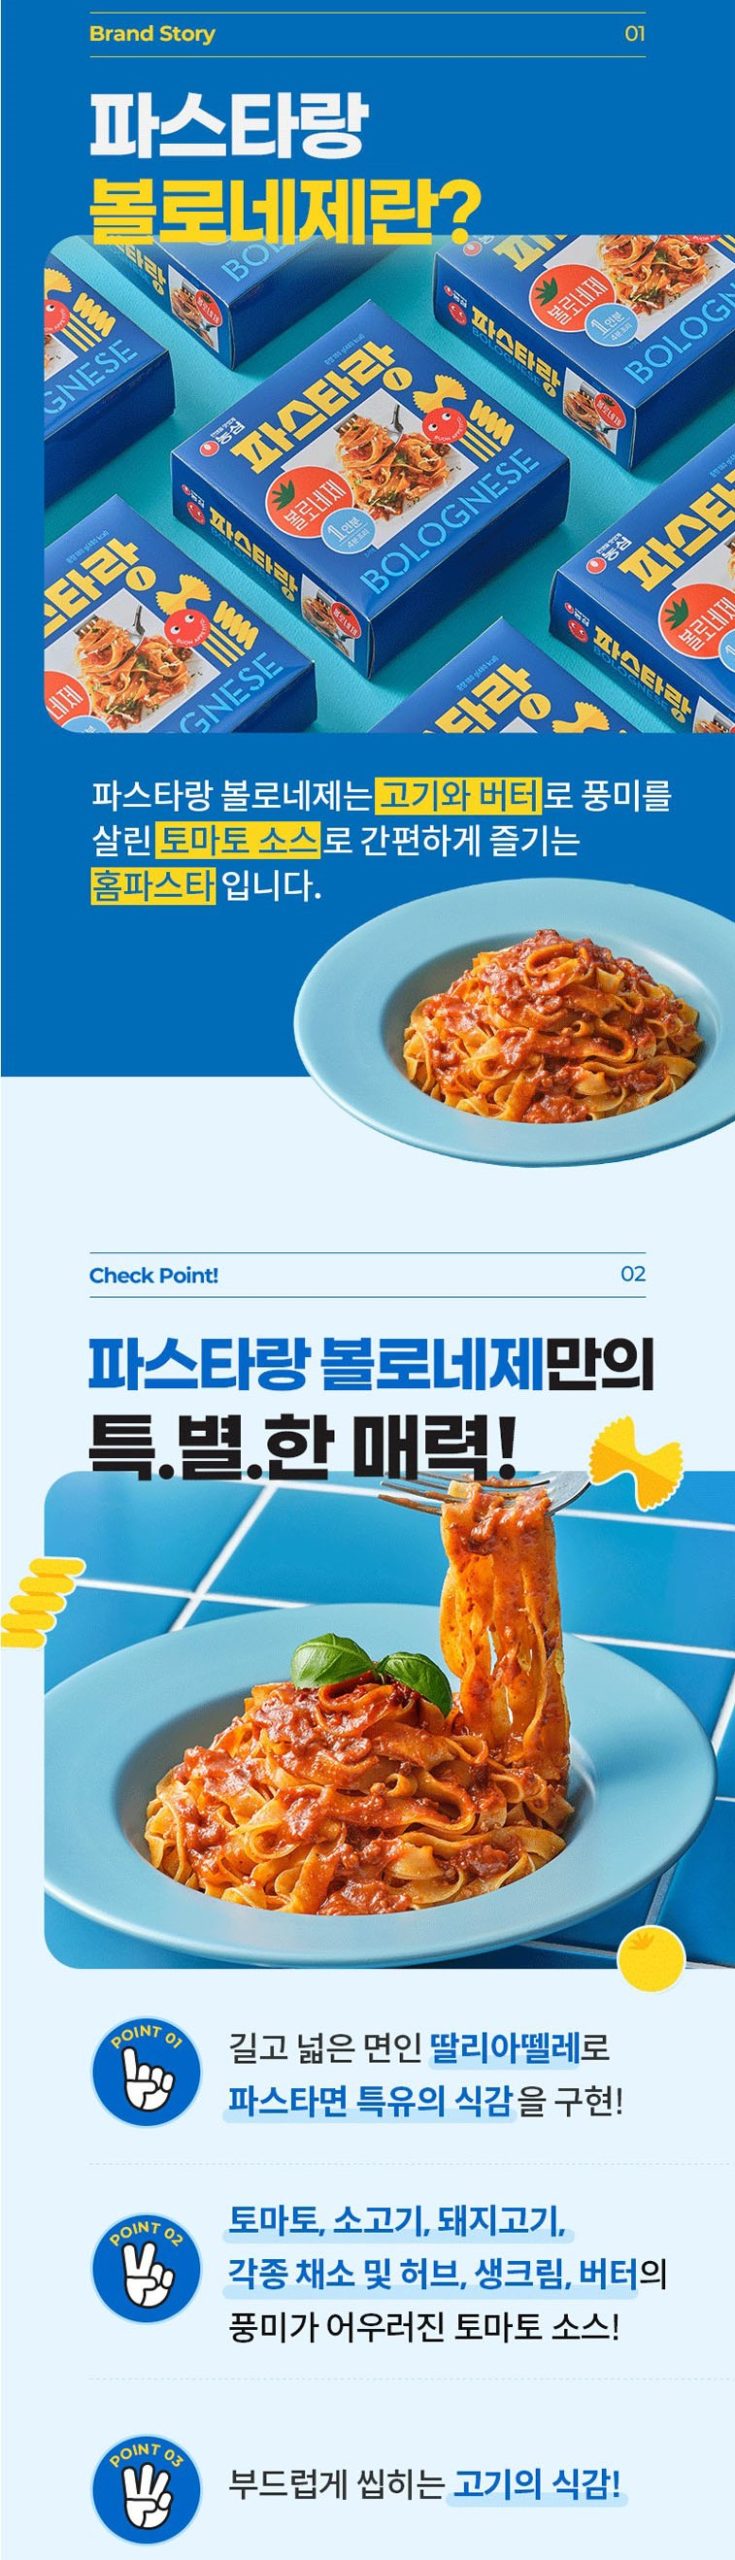 韓國食品-[Nongshim] Pastarang (Spaghetti Bolognese) 180g